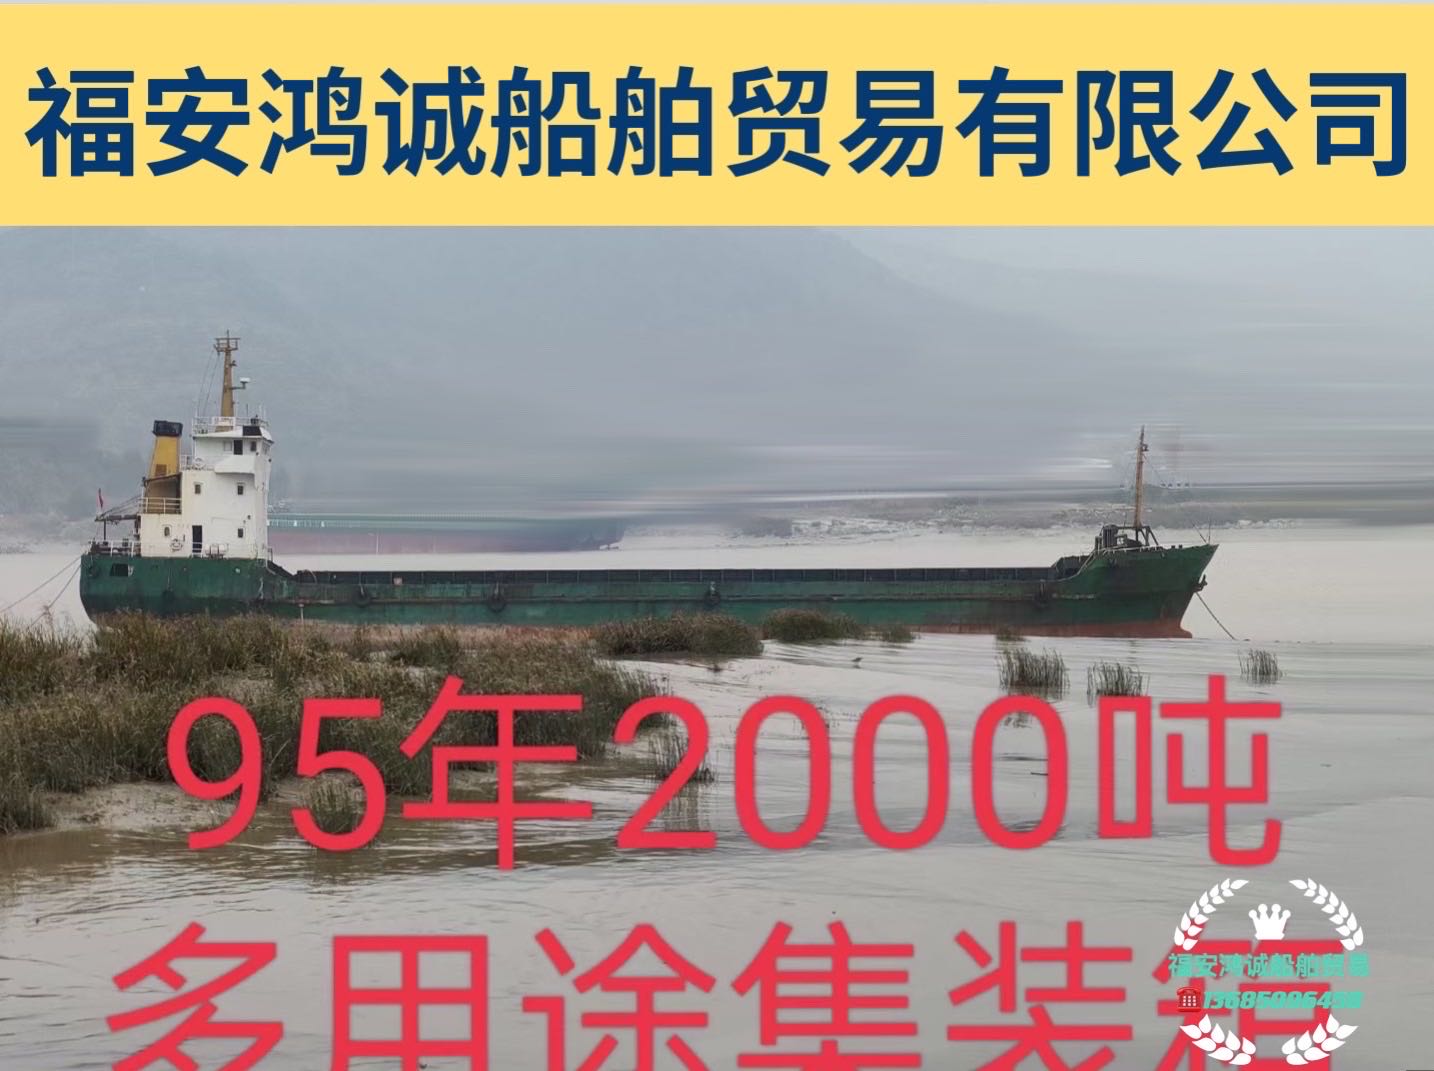 低价出售95年造2000吨多用途集装箱船